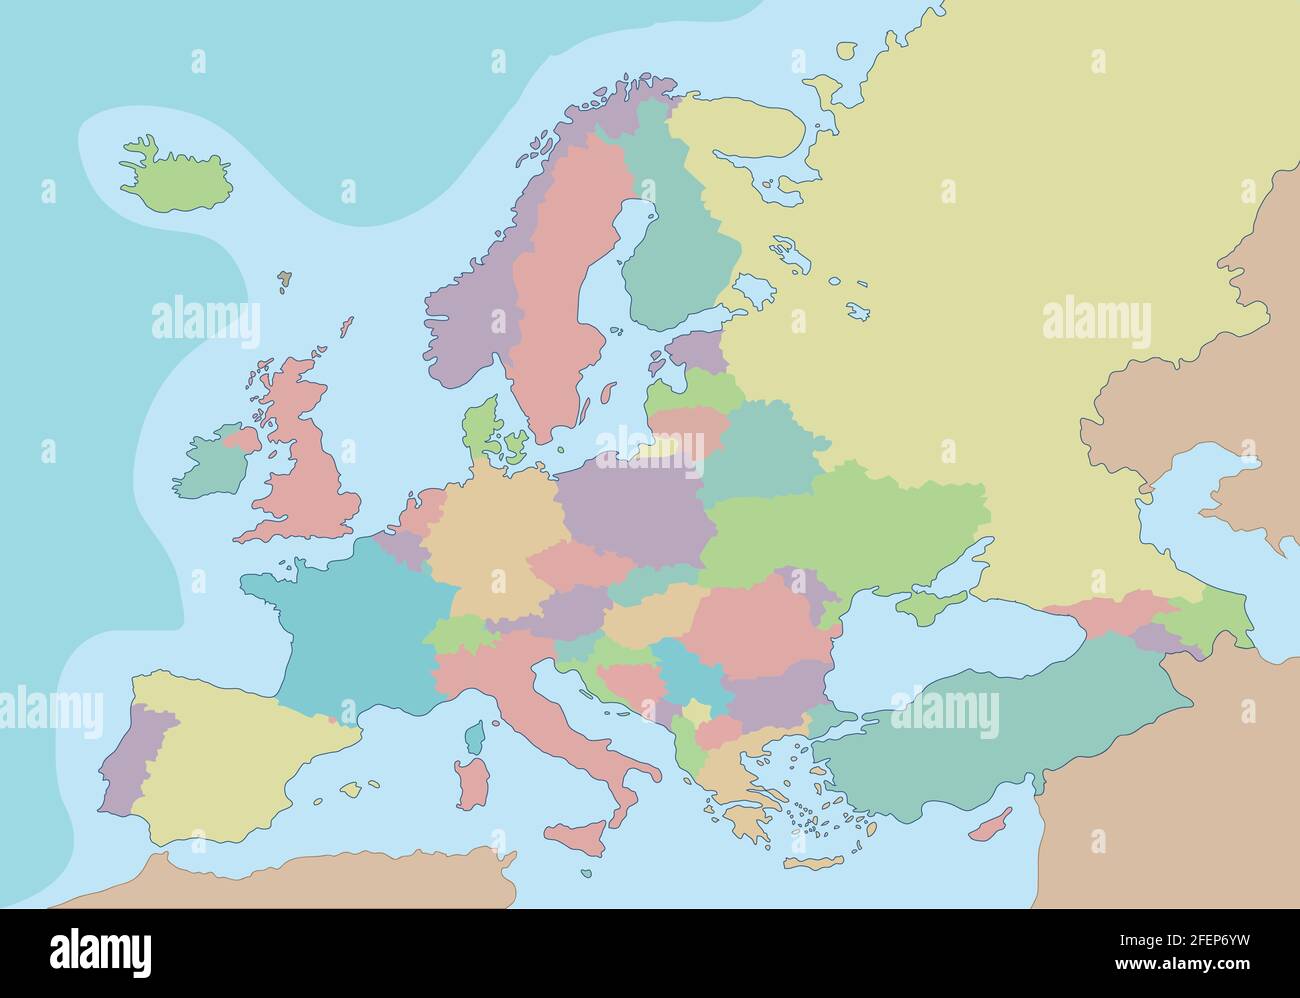 Politische Landkarte von Europa mit verschiedenen Farben für jedes Land. Vektorgrafik. Stock Vektor